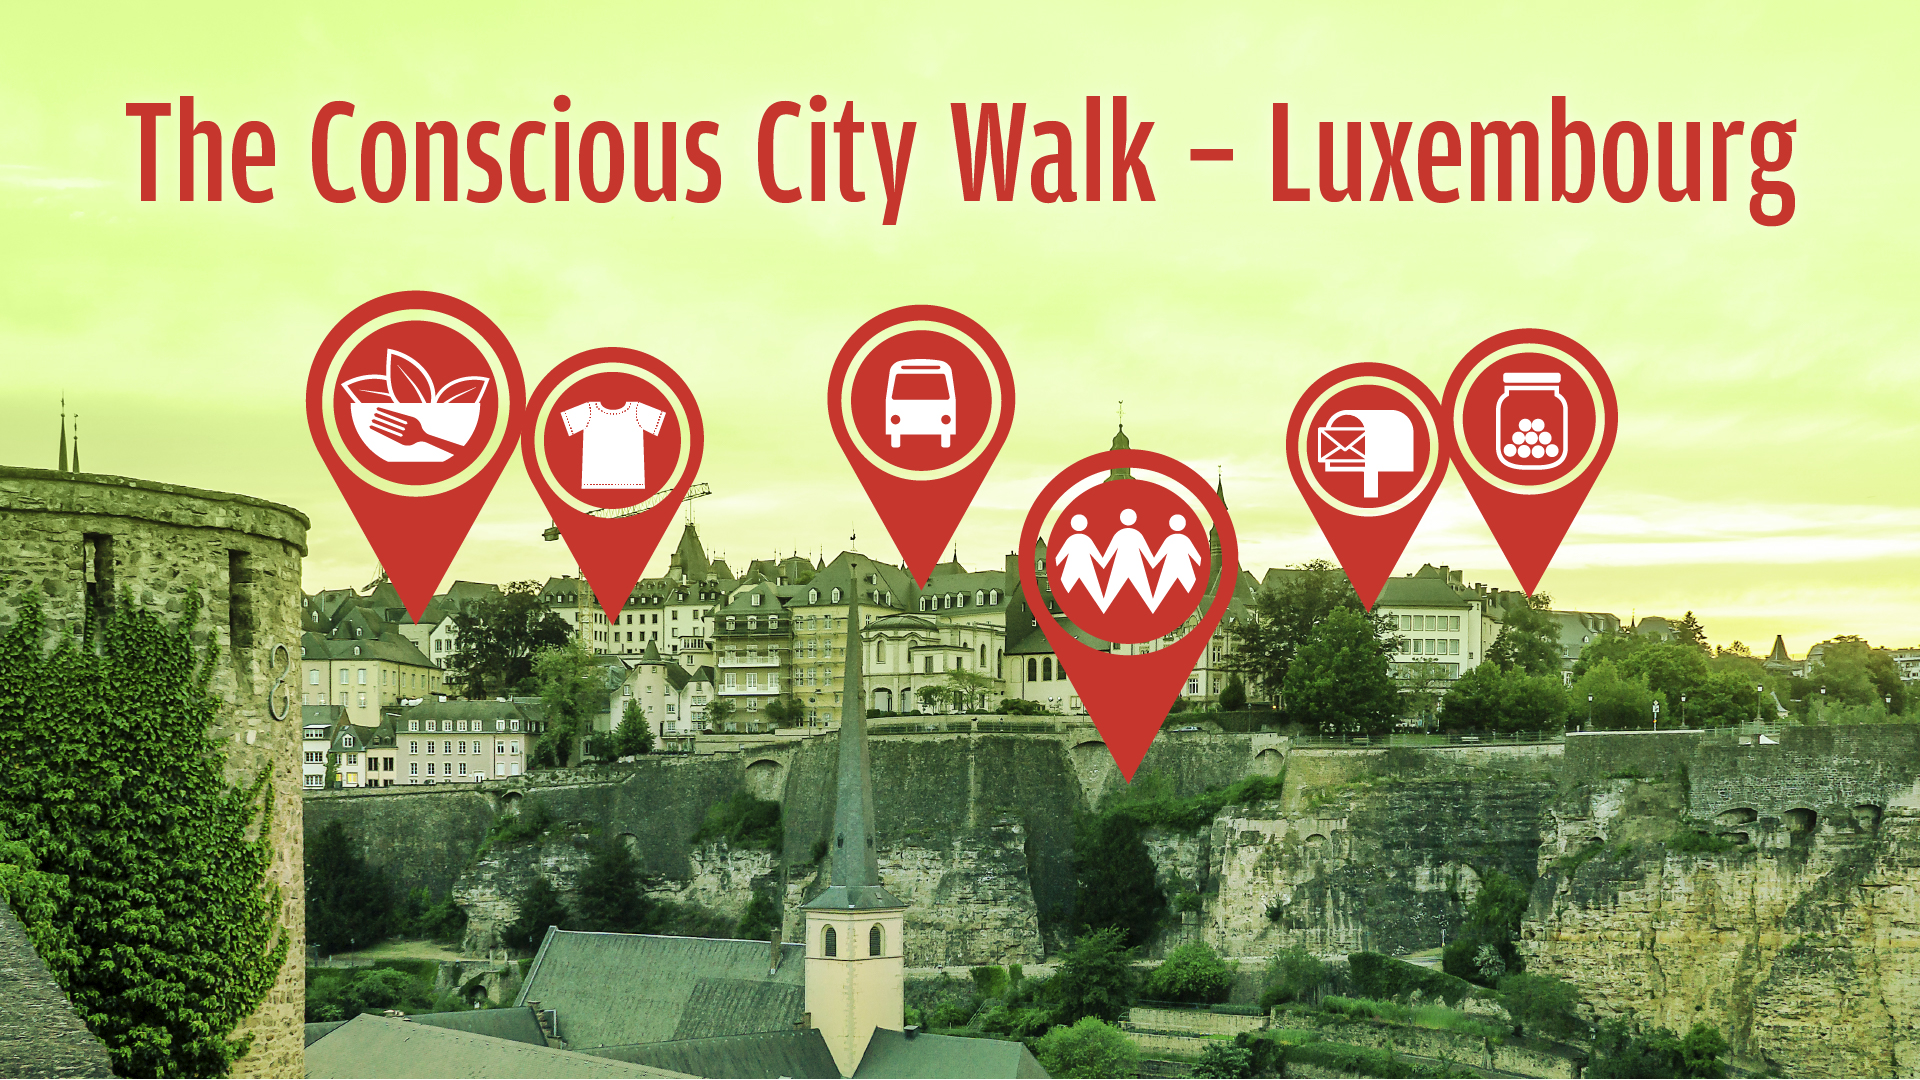 Rejoignez-nous pour le Conscious City Walk Luxembourg en automne!